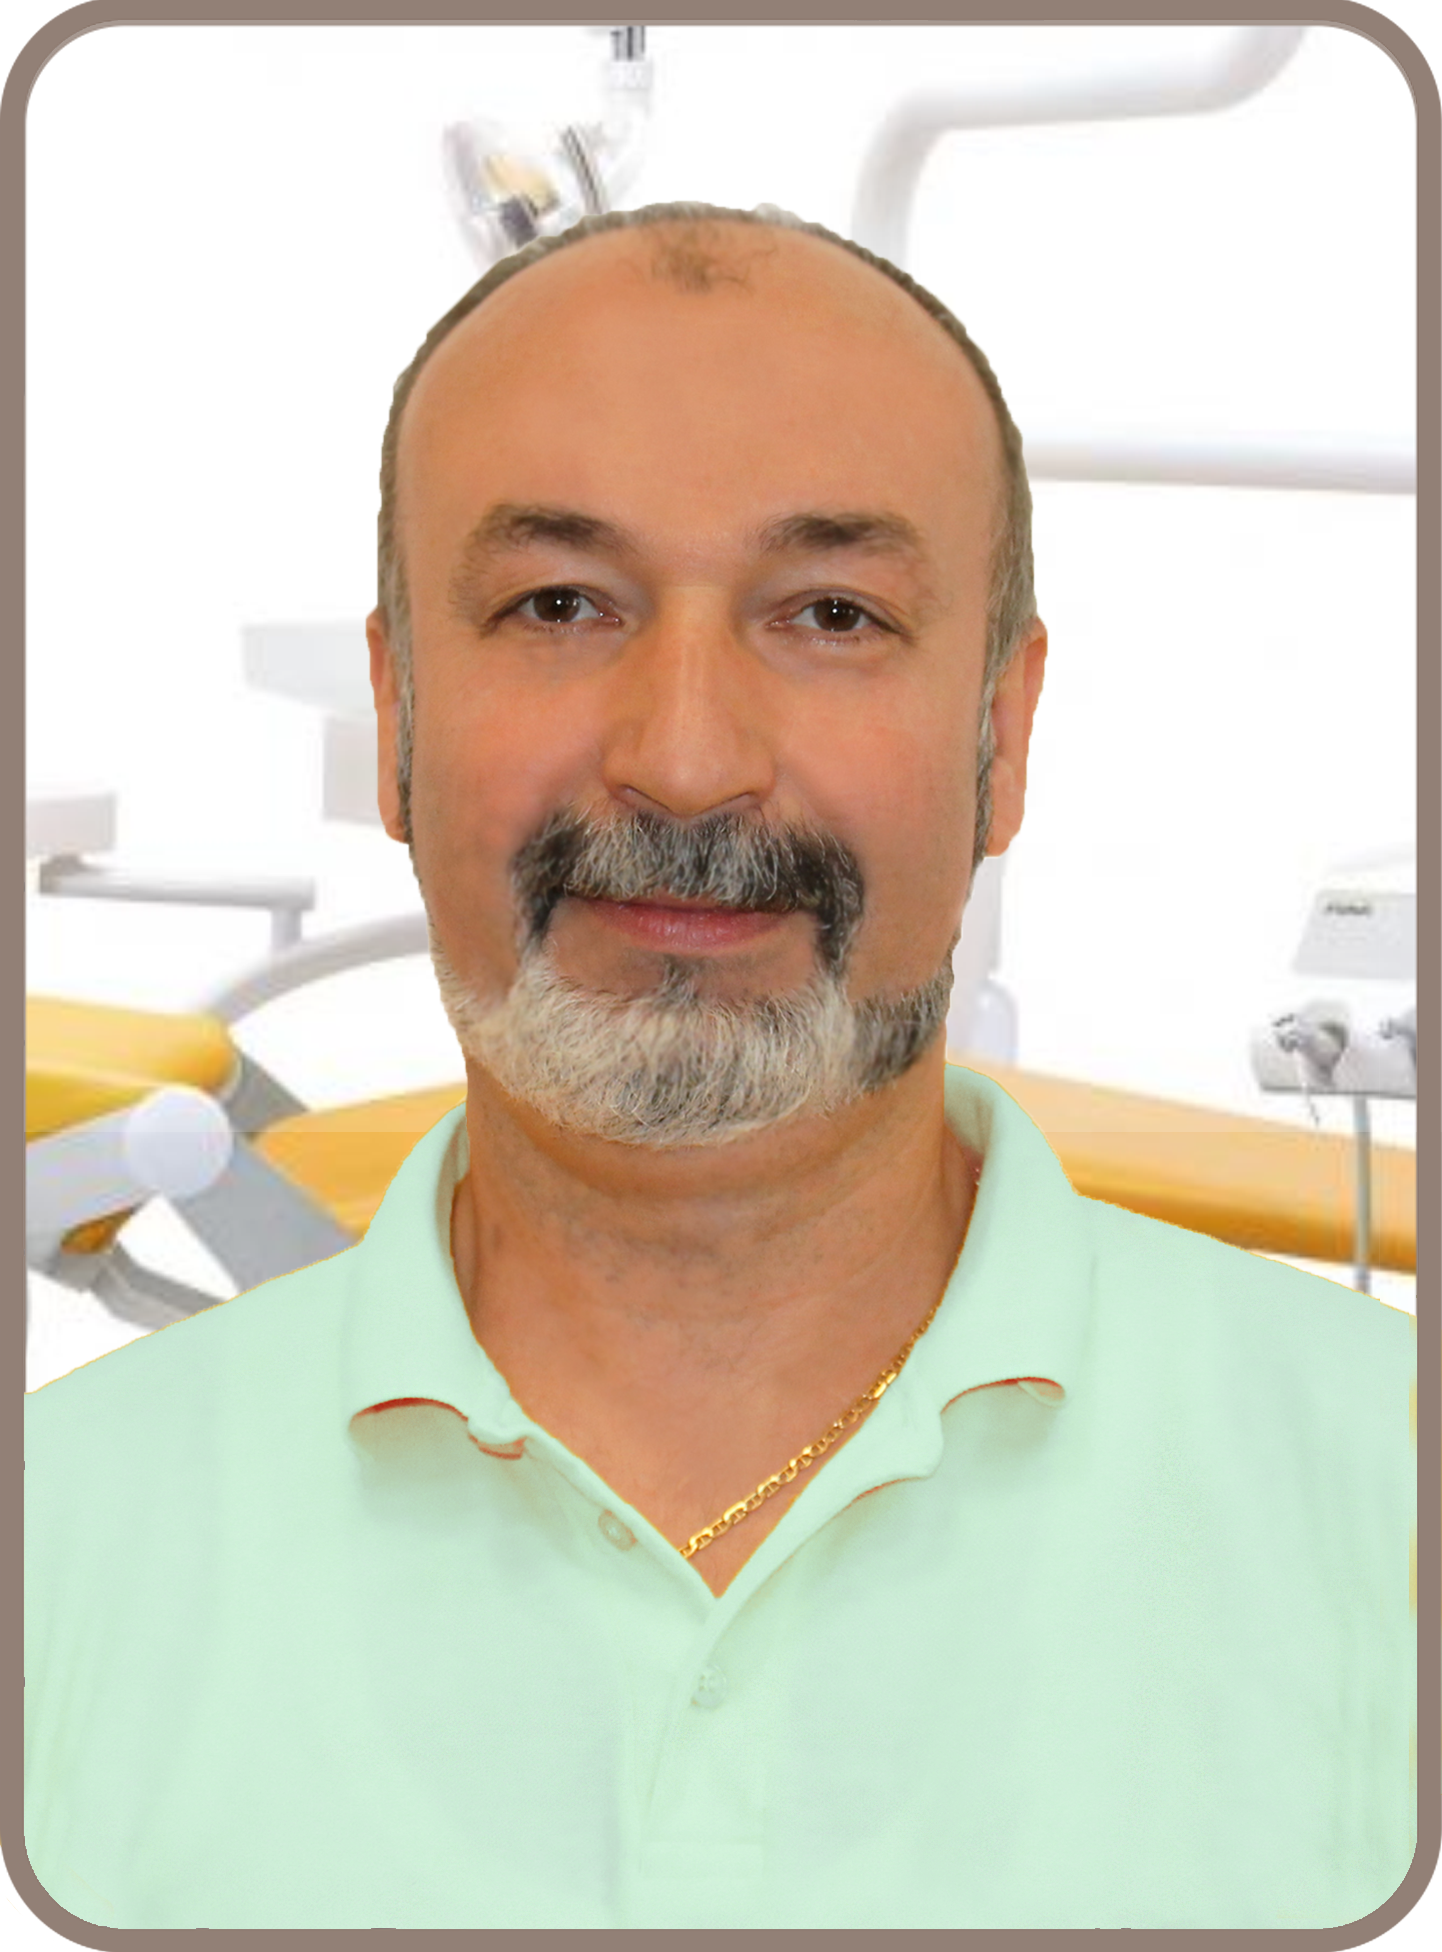 Dr. Nyorba Péter fogpótlástan és konzerváló fogászat fogszakorvos, parodontológia, implantológia, PRF membrán technikák